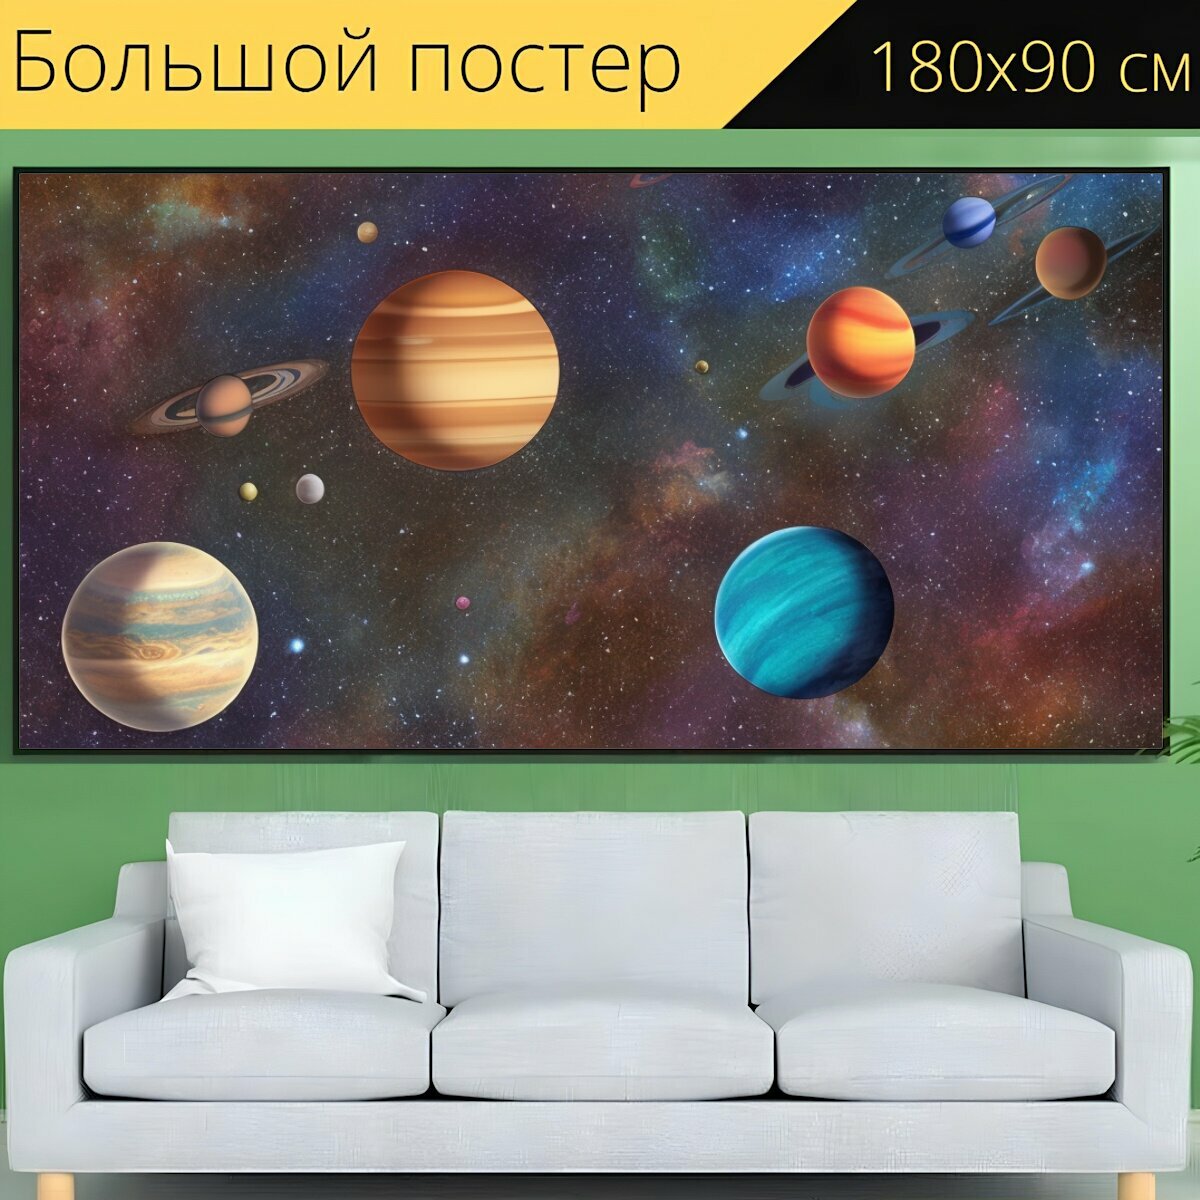 Большой постер для любителей космоса "Вселенная, космос, планеты" 180 x 90 см. для интерьера на стену